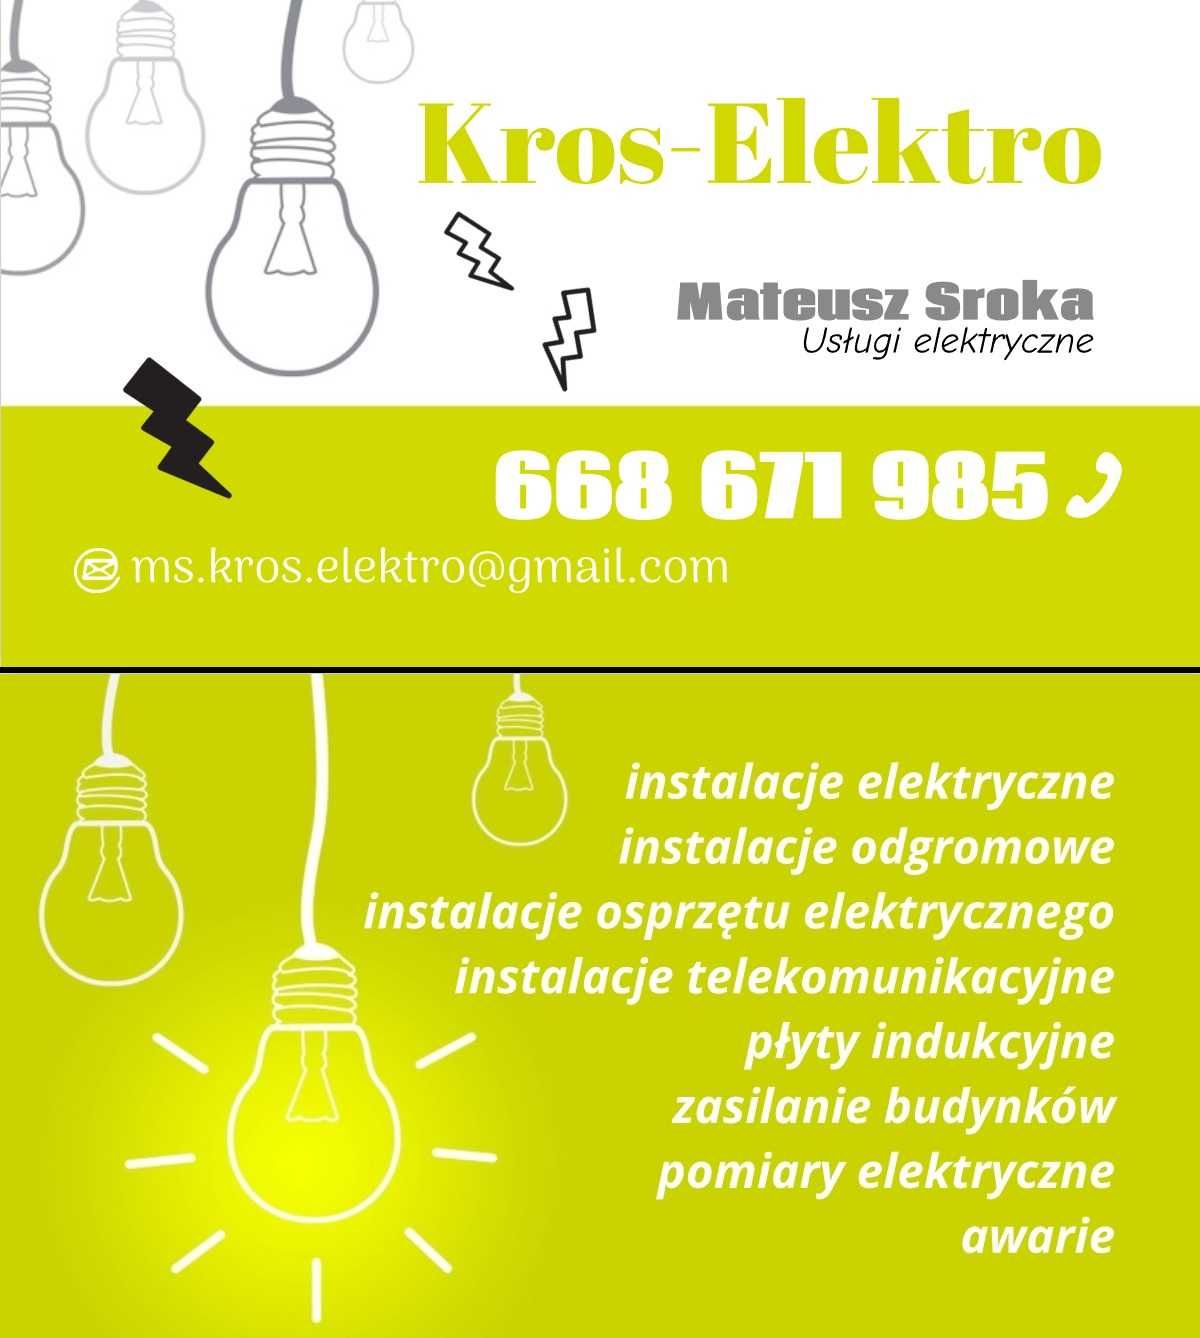 Kros-Elektro usługi elektryczne, instalacje elektryczne